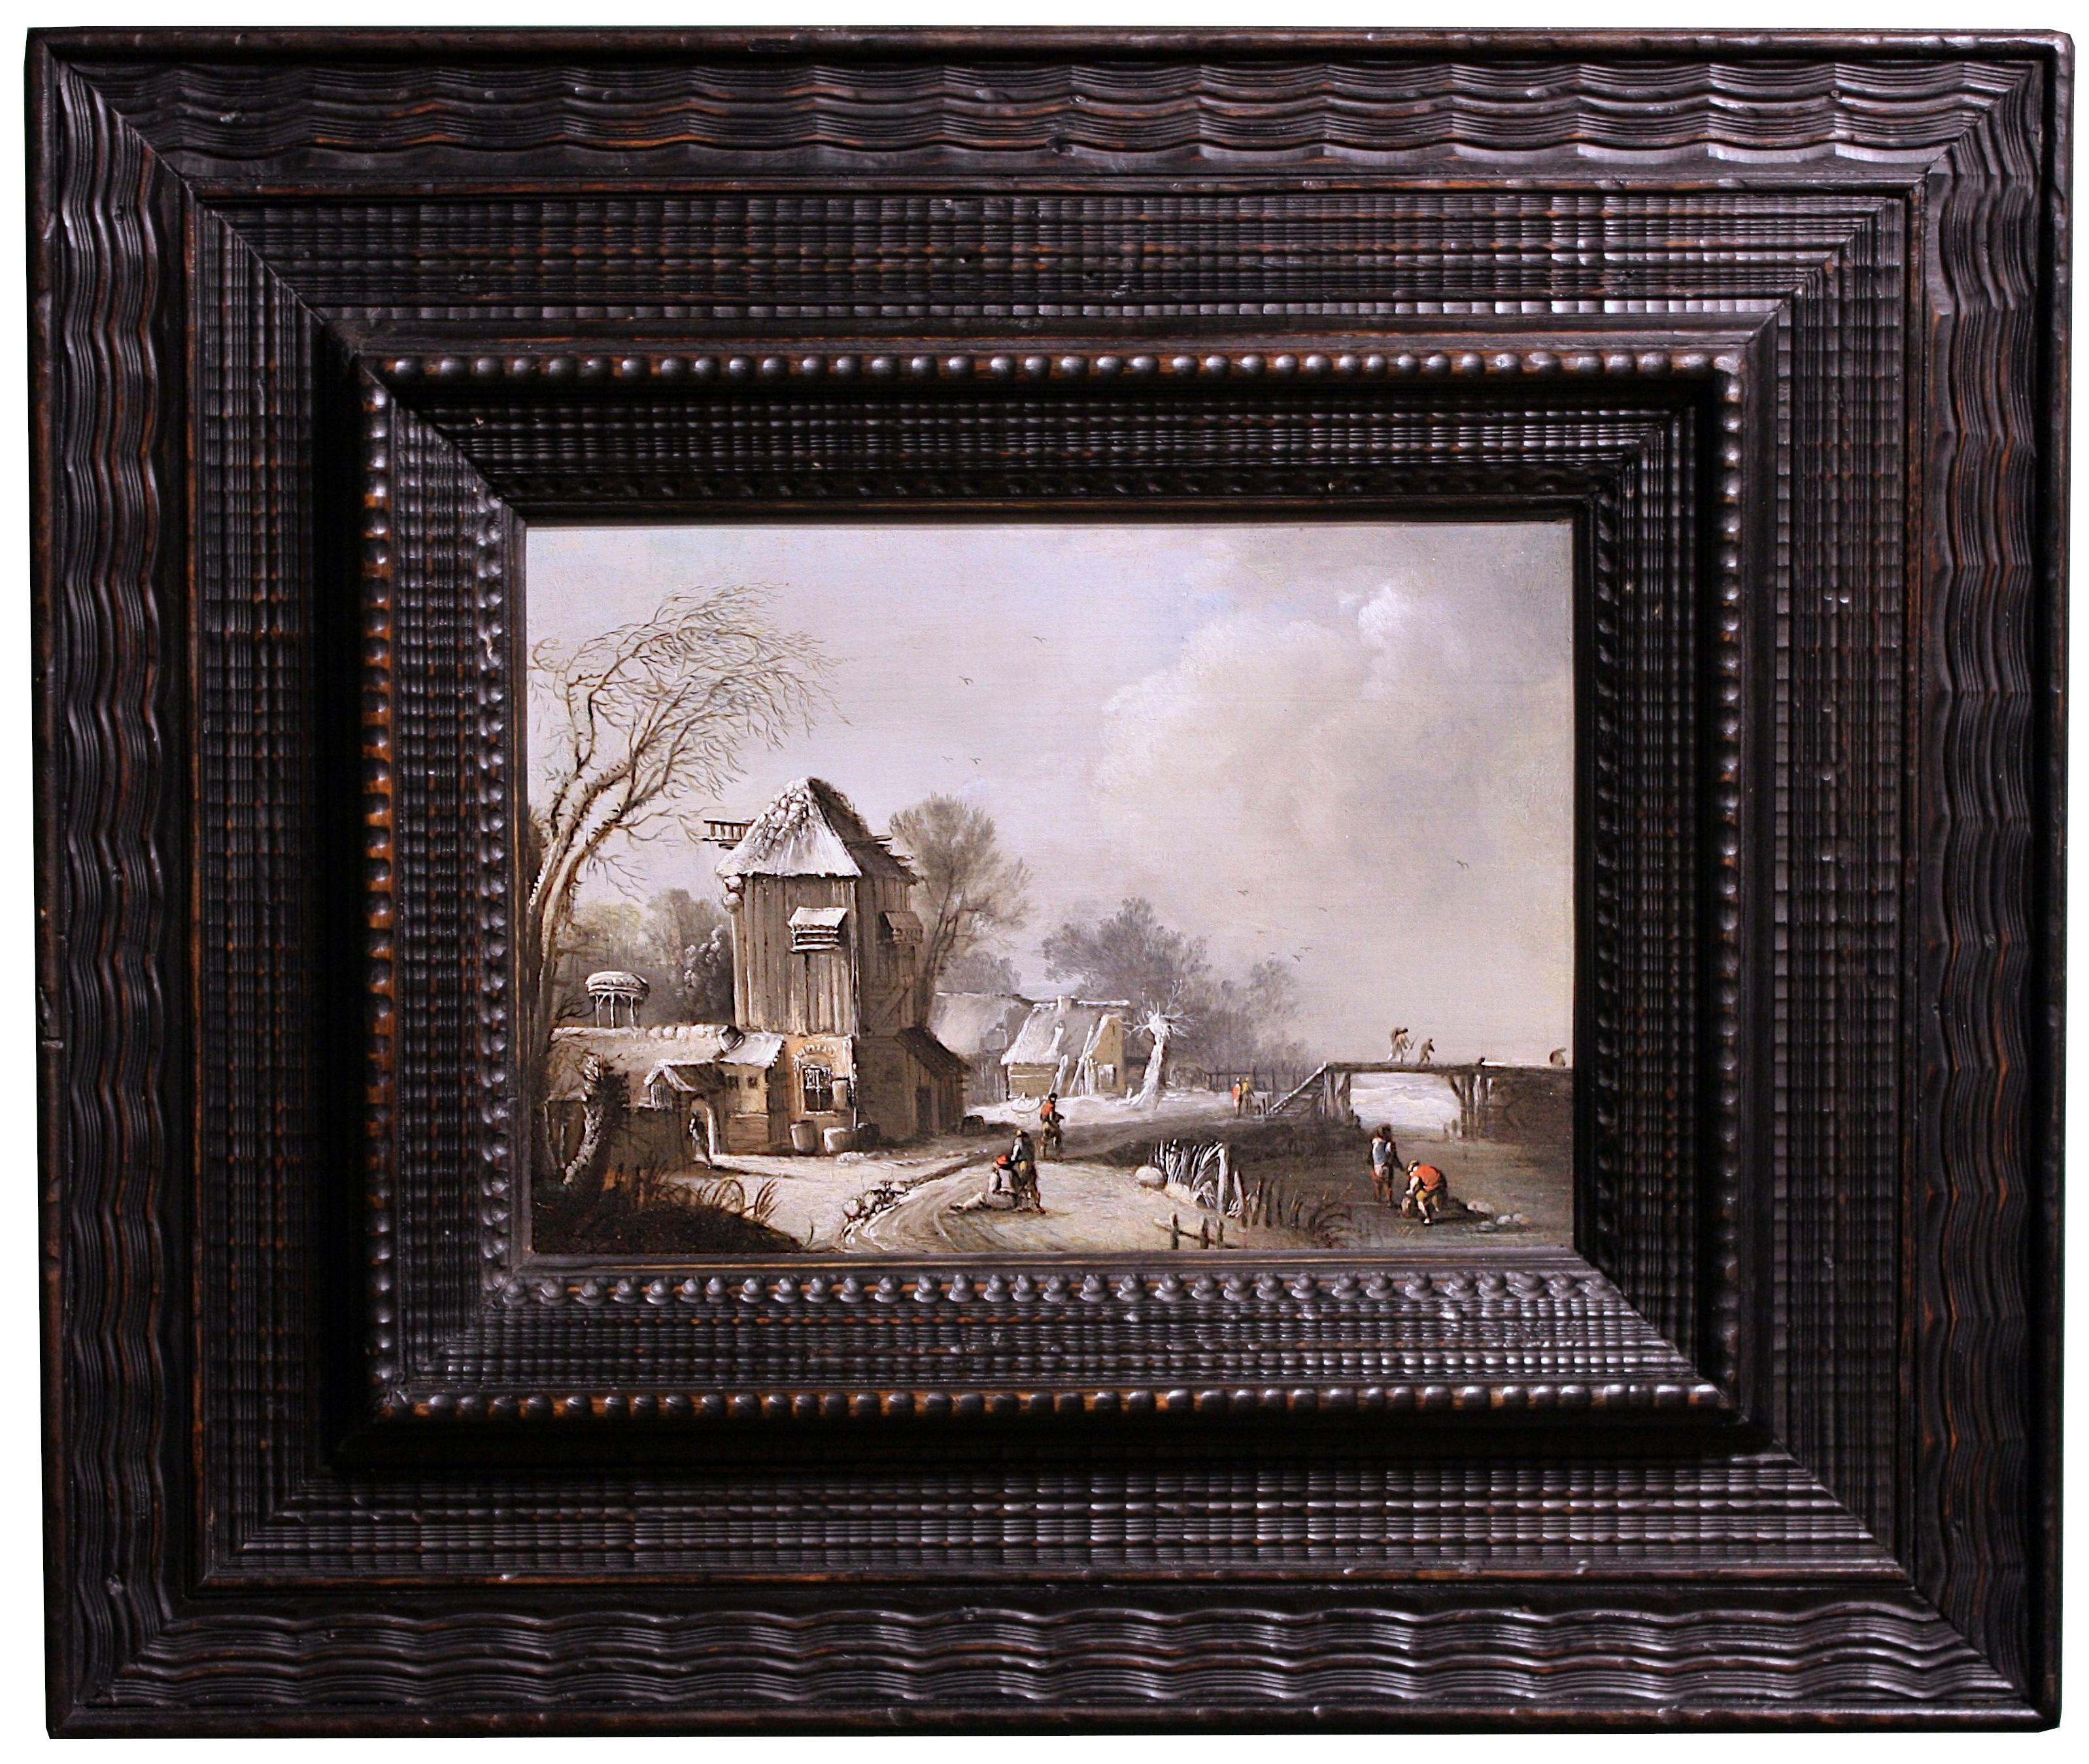 Klaes Molenaer Landscape Painting - 17th c. Dutch school, Winter Landscape at the farm, oil on panel